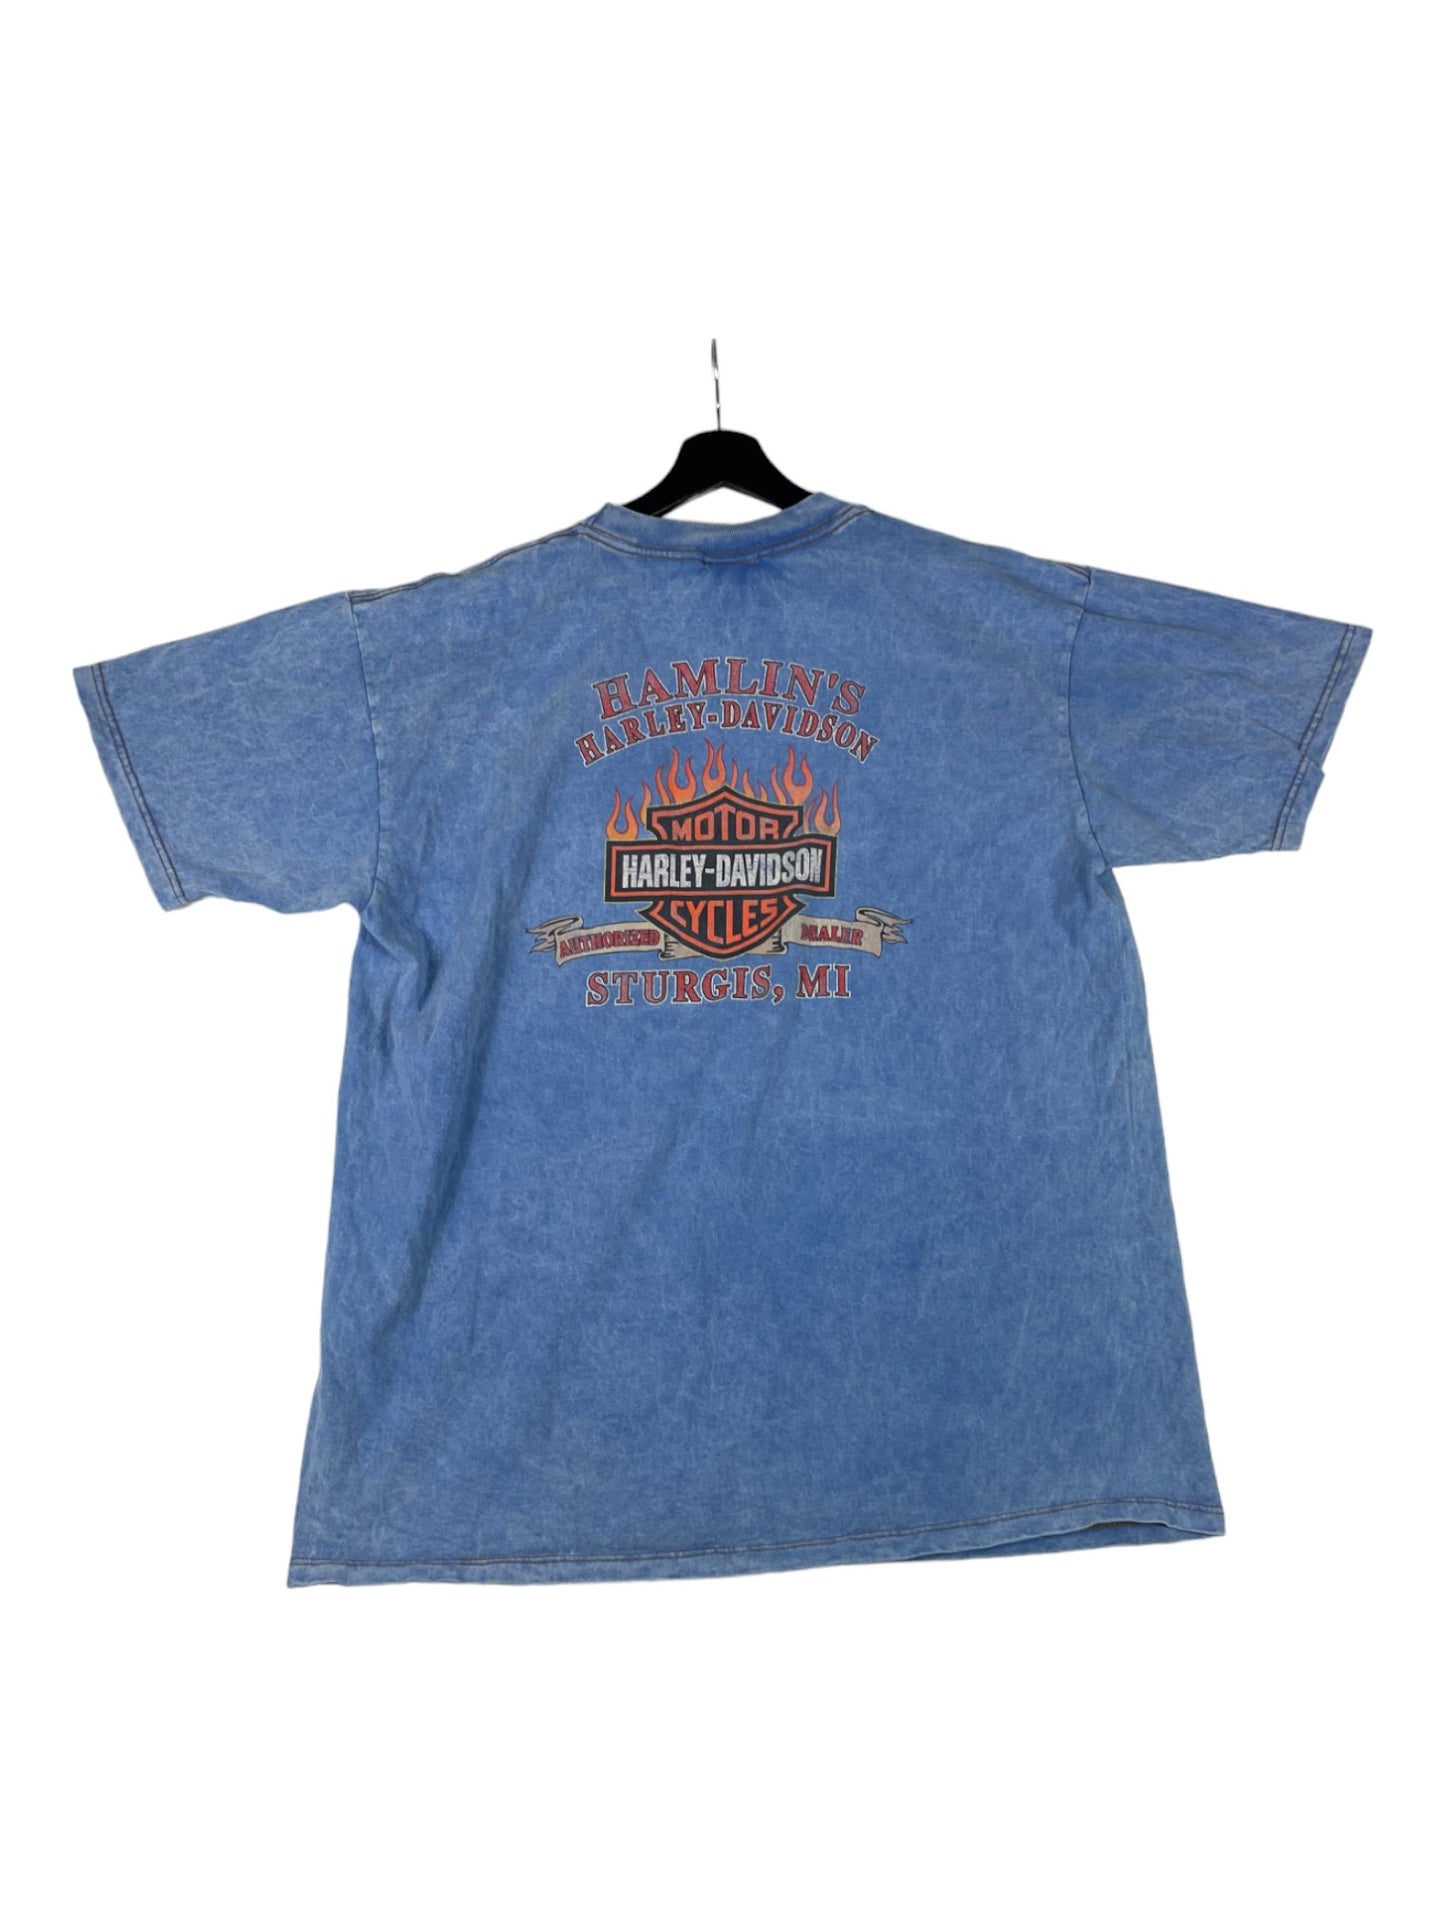 Harley-Davidson Sturgis T-Shirt